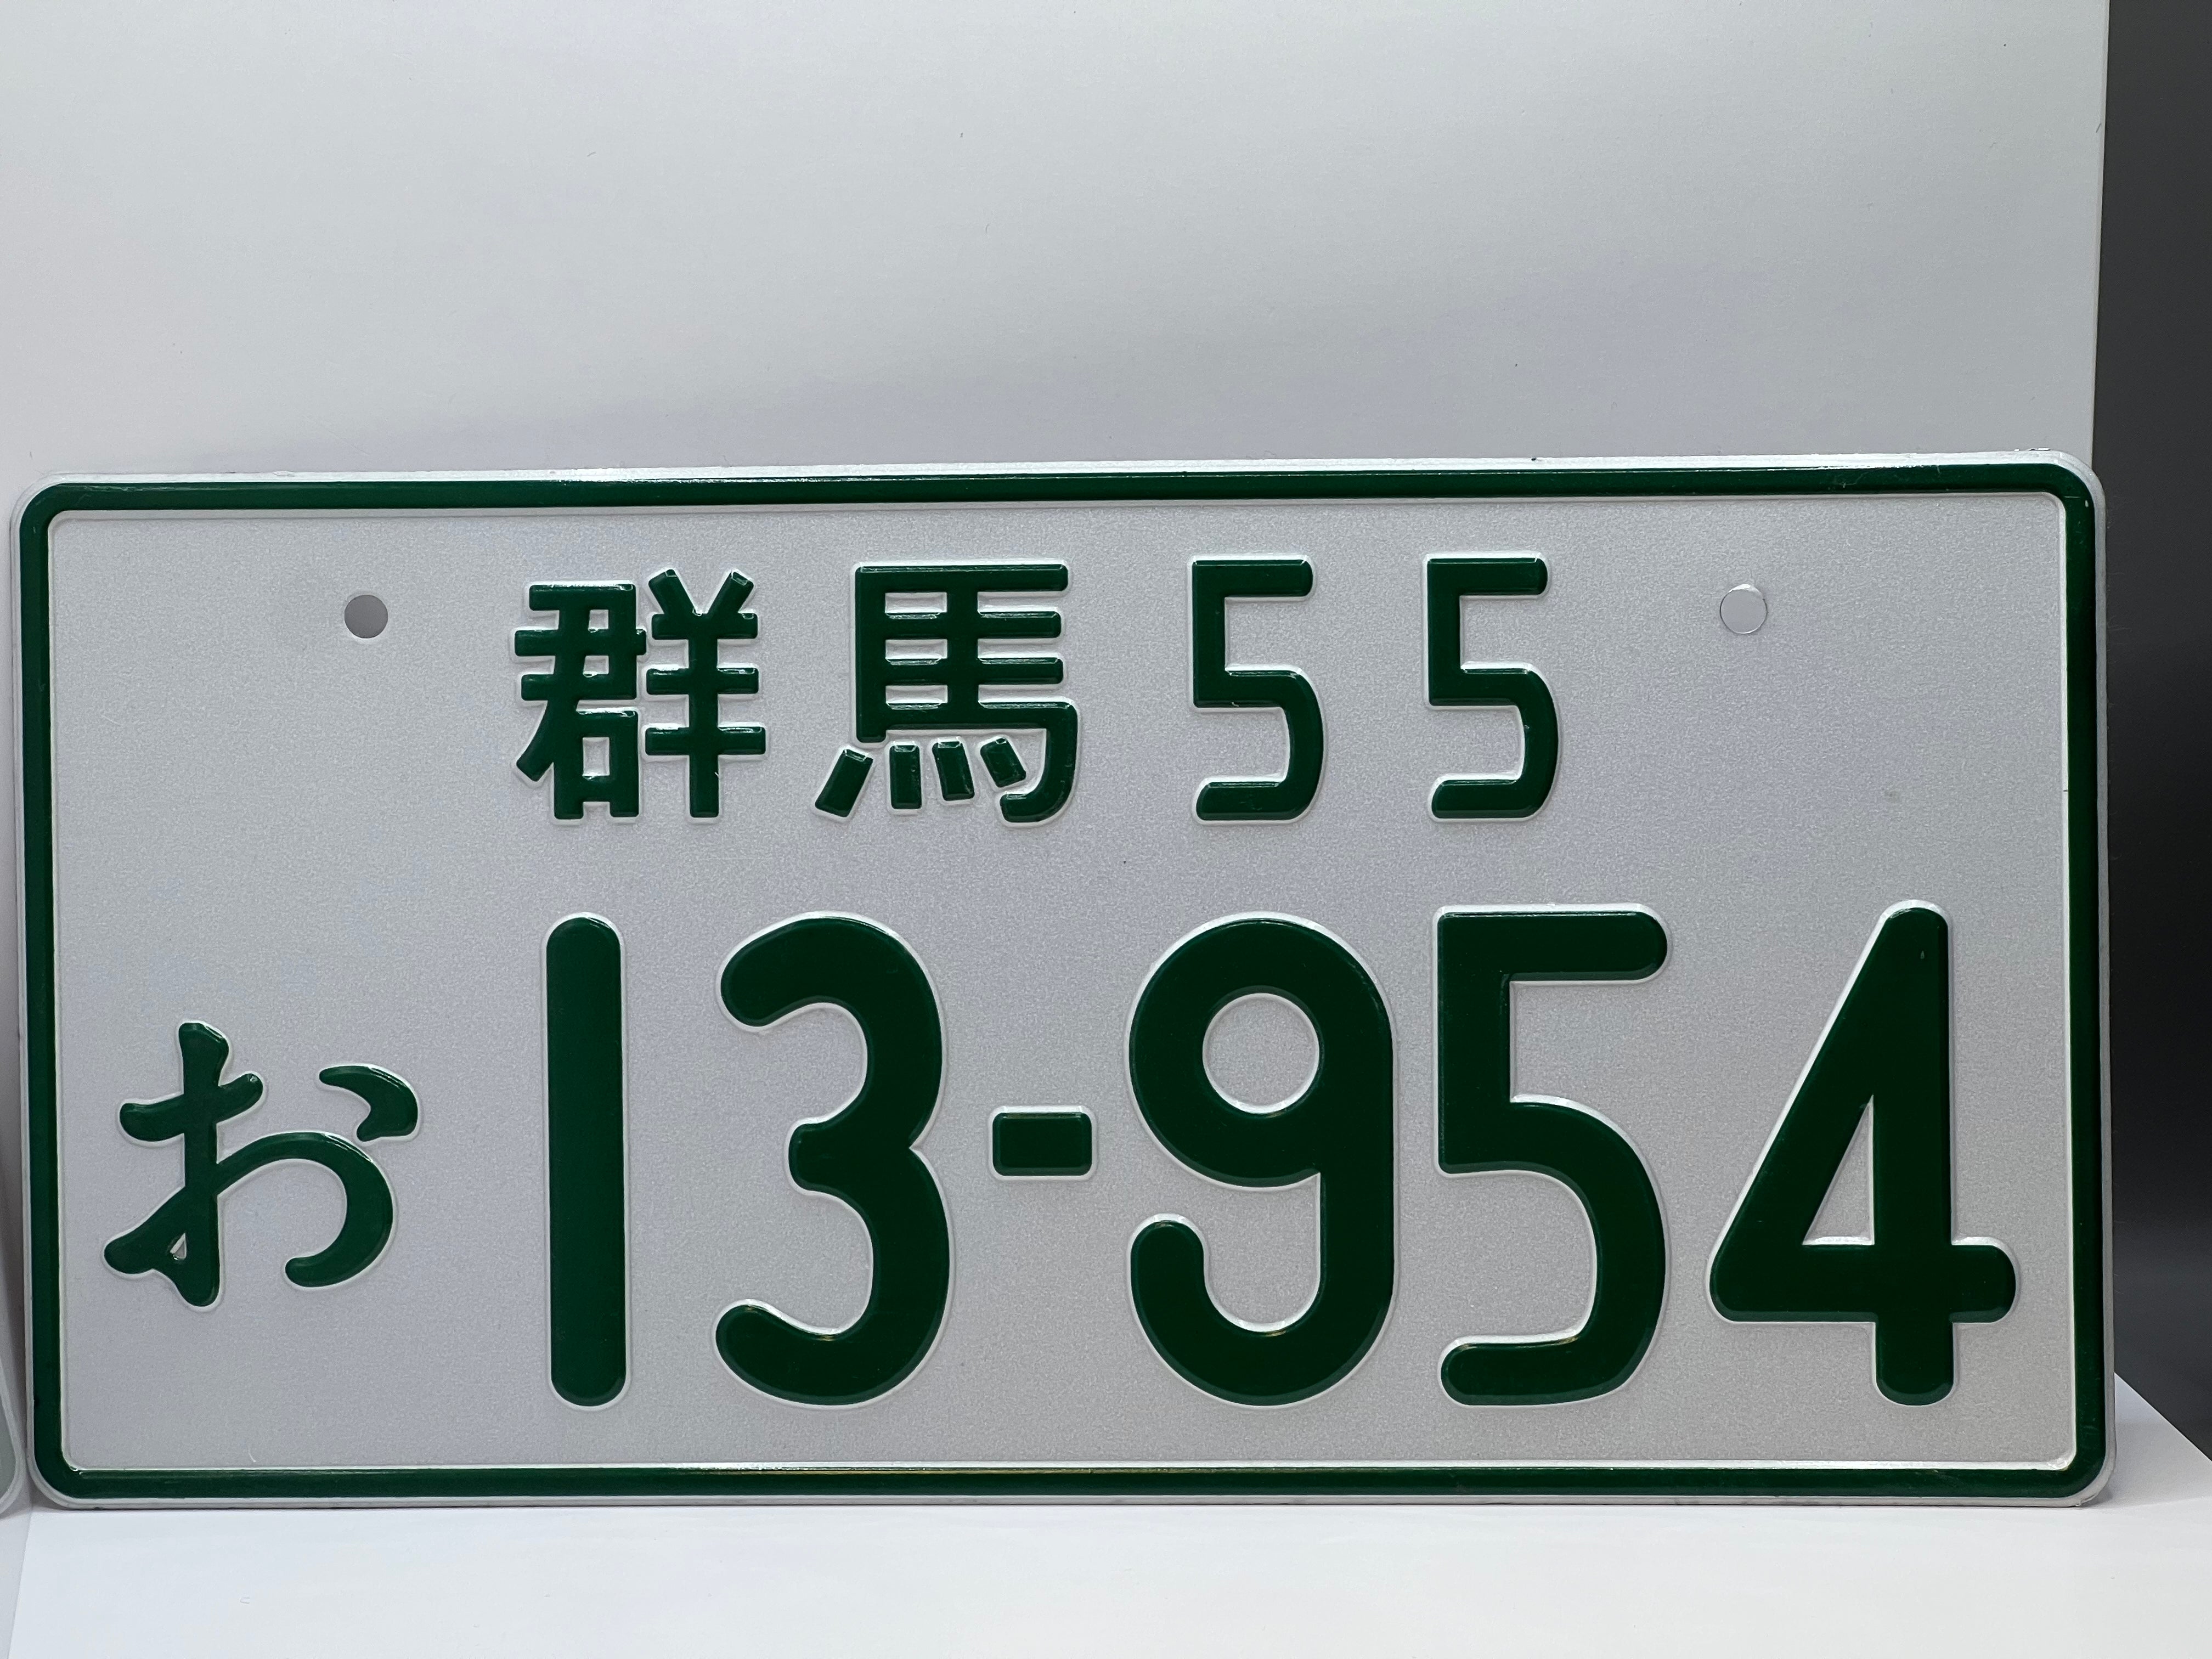 Takumis Nummernschild 13-954 aus Initial D - Hochwertiges Metallschild für Fans